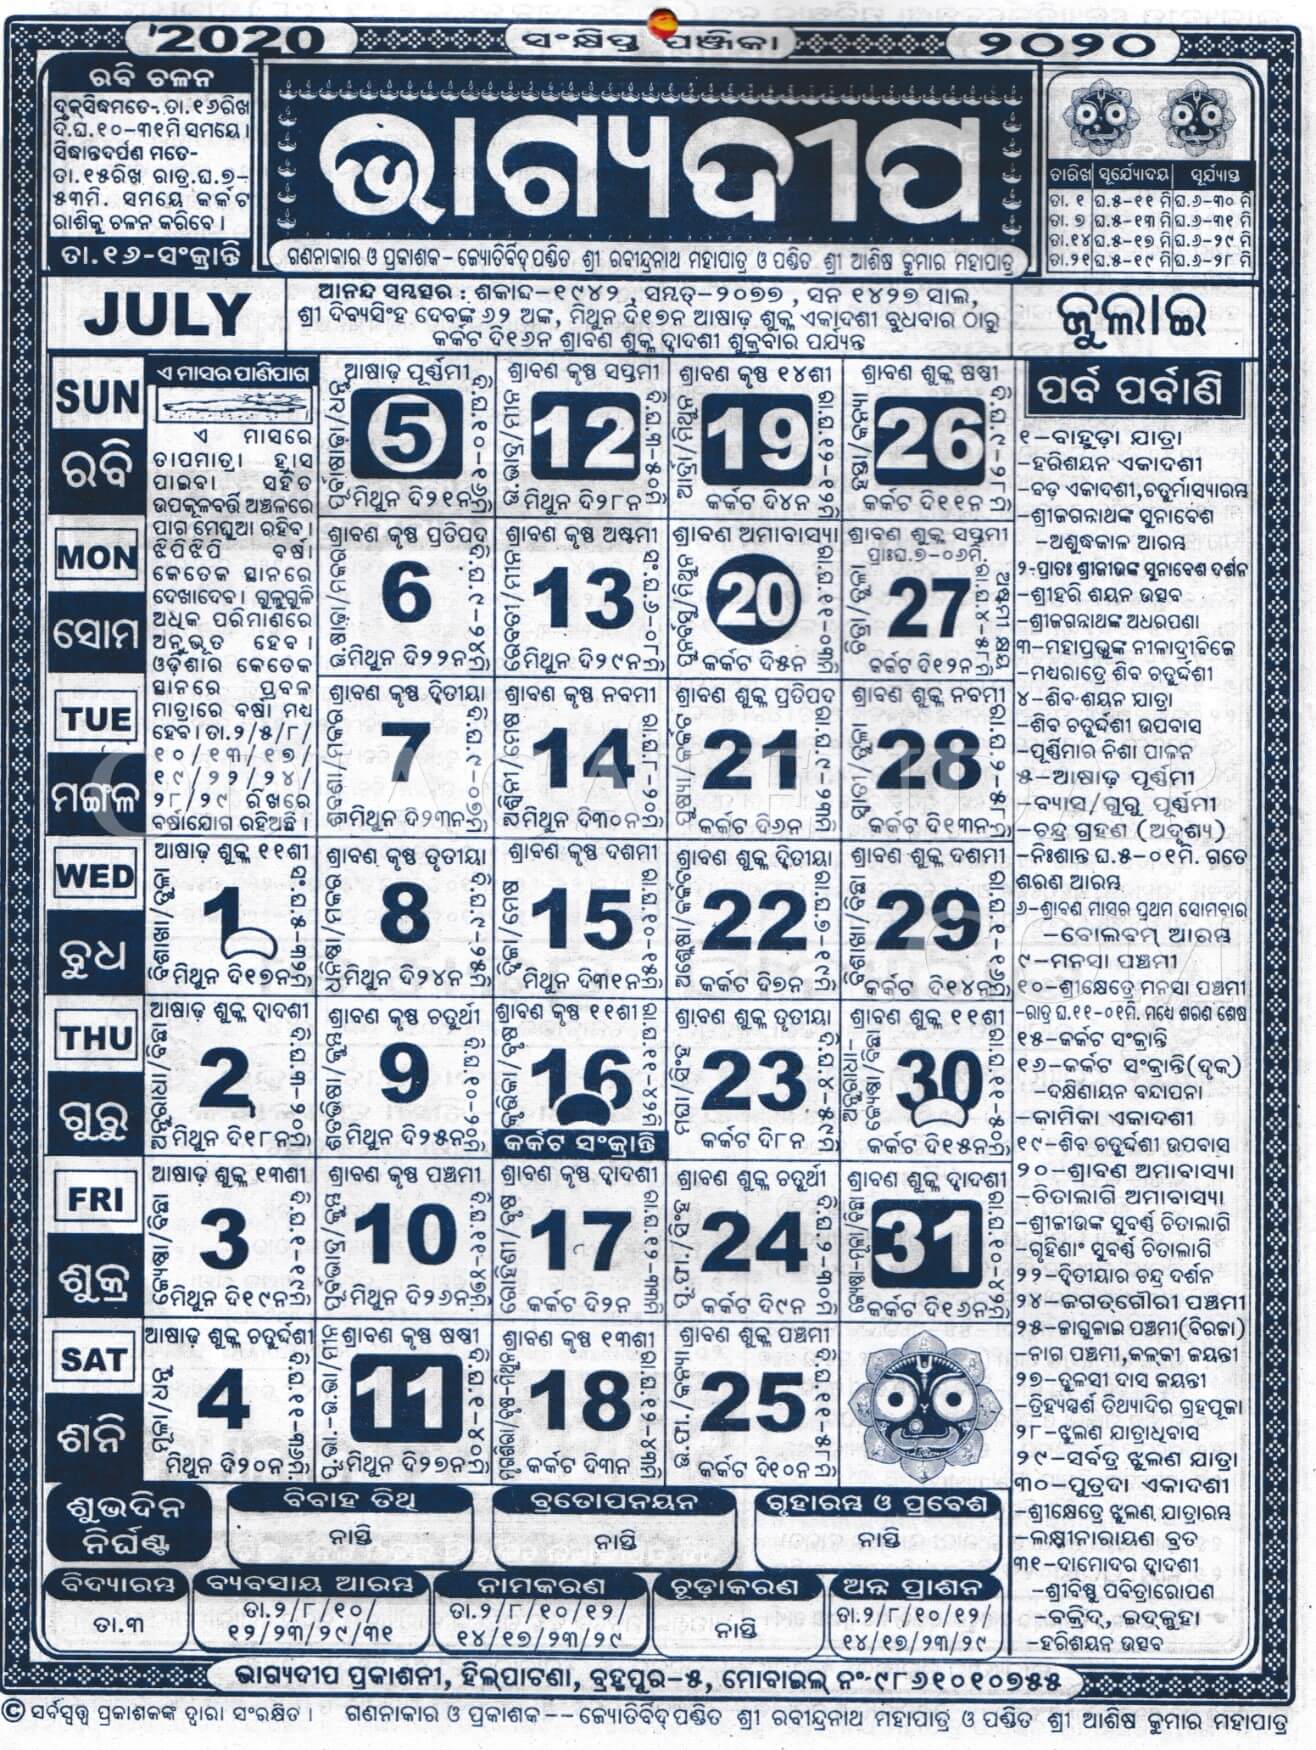 Bhagyadeep Odia Calendar July 2020 - Download HD Quality